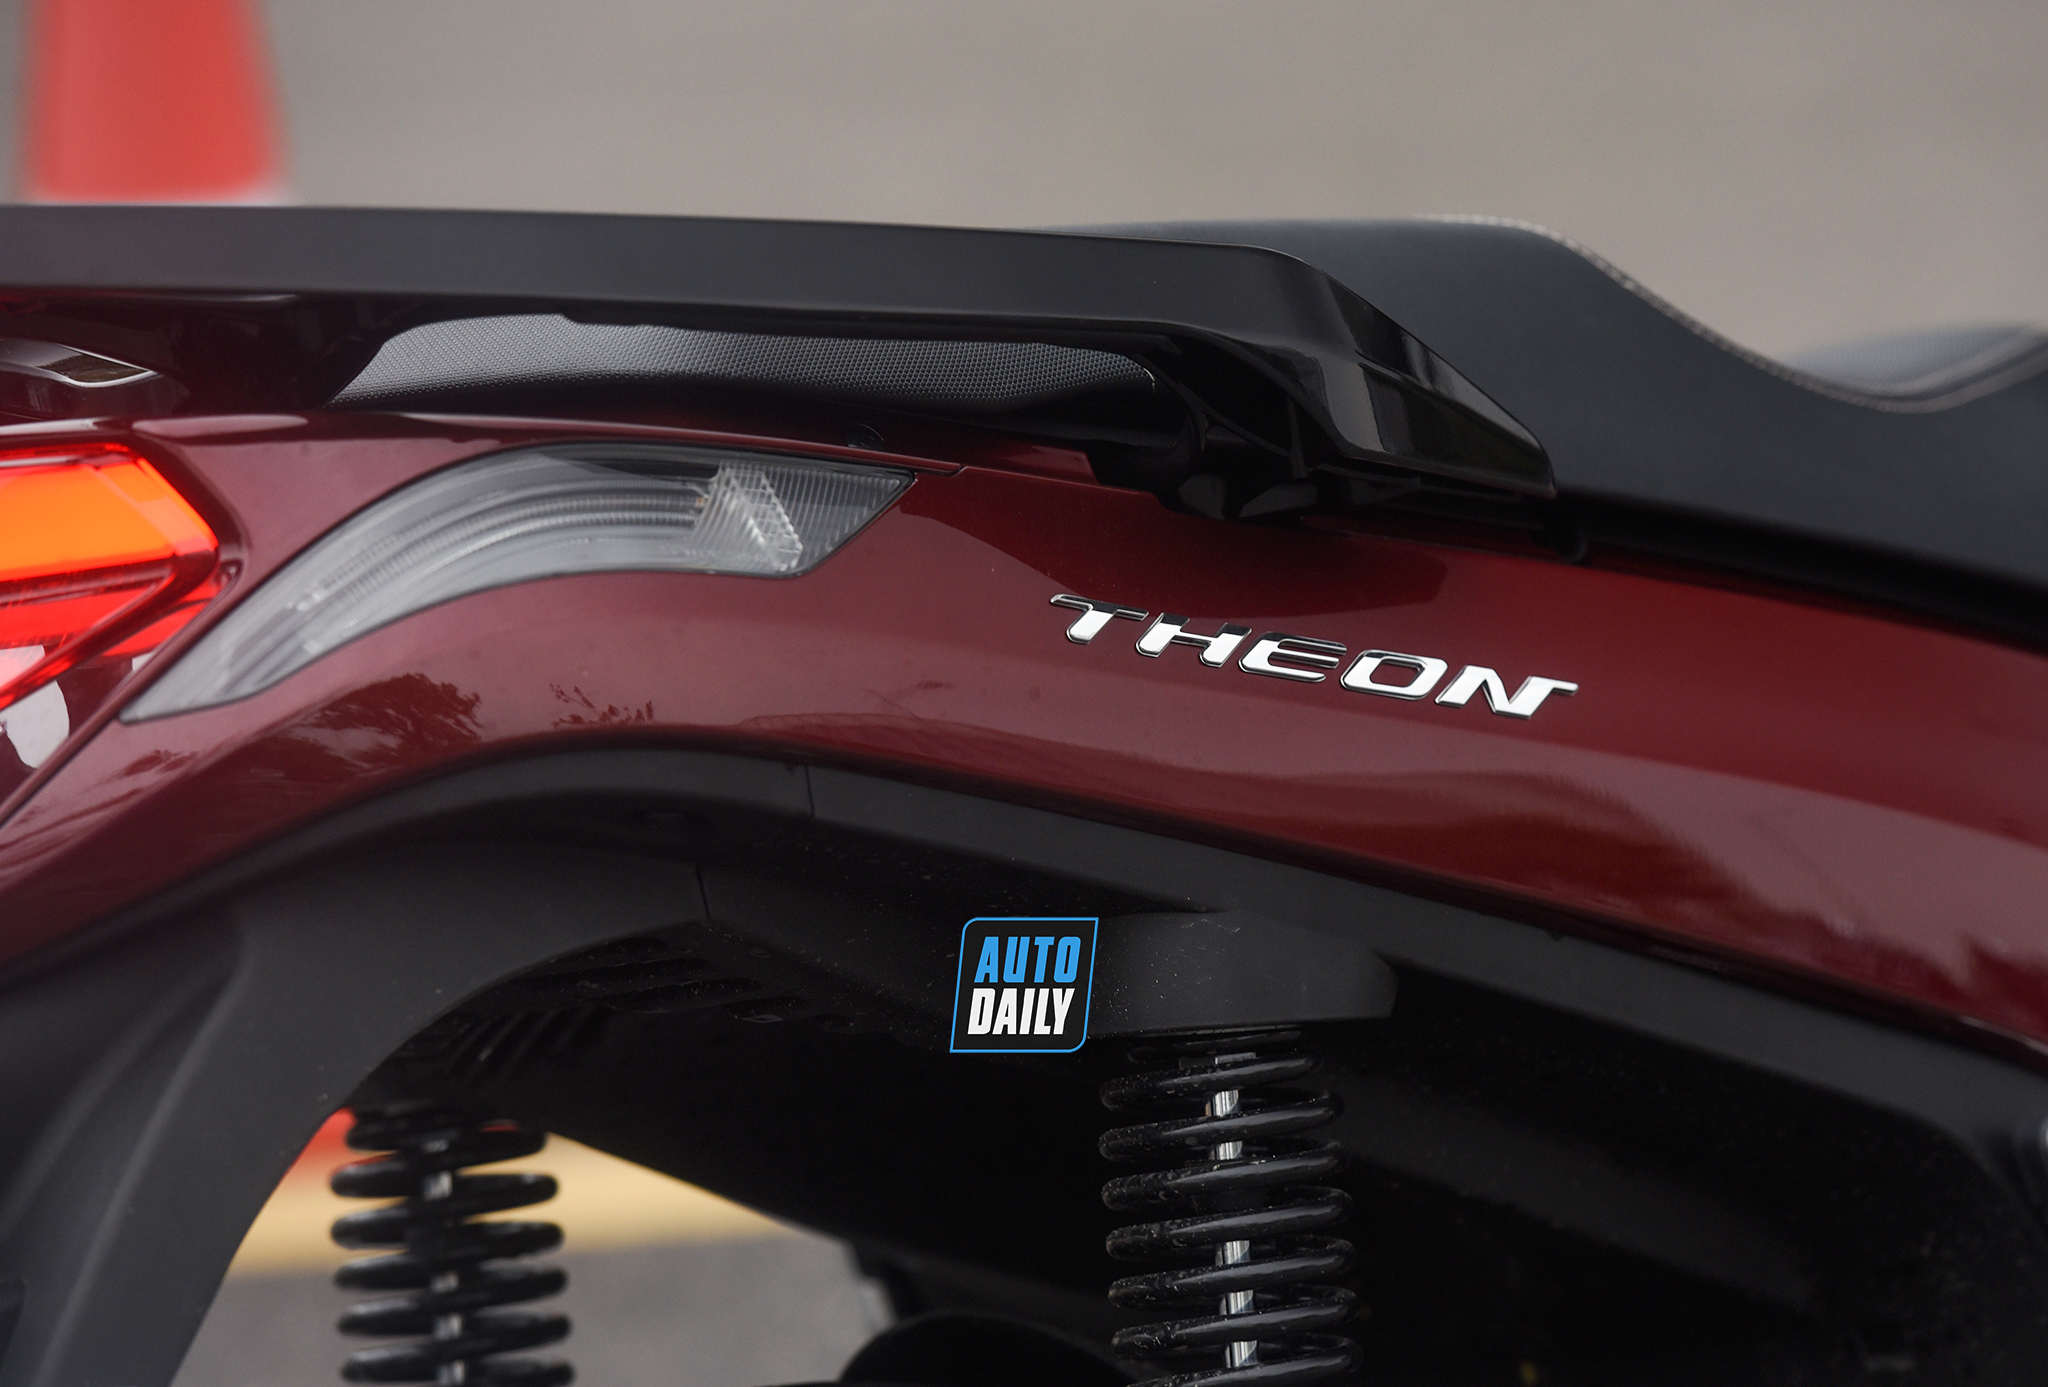 Chi tiết VinFast Theon - Xe máy điện cao cấp nhiều công nghệ tiên tiến dsc-8749-copy.jpg